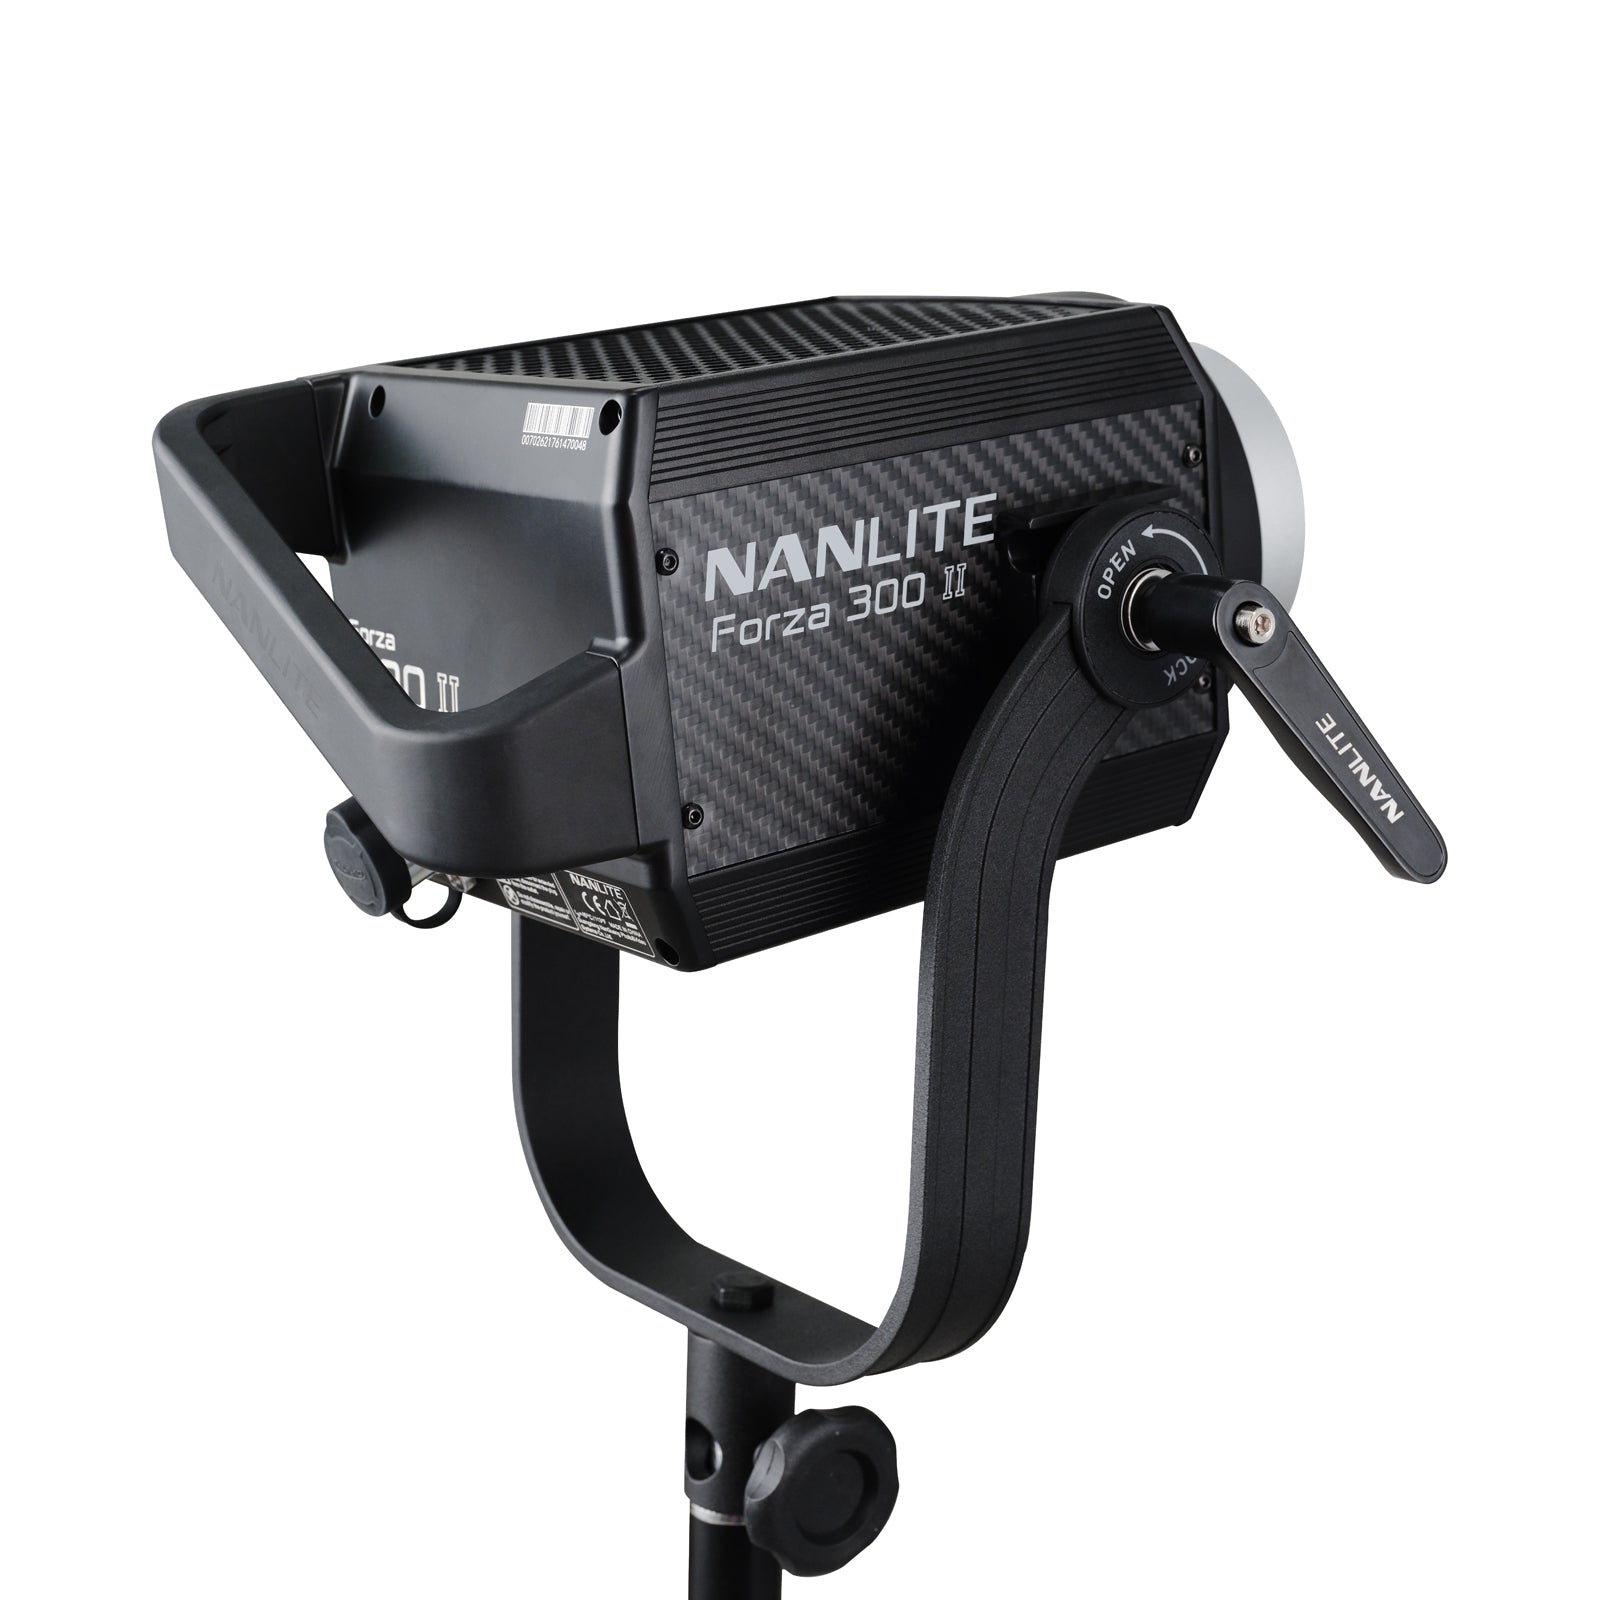 NANLITE Forza 300 Ⅱ ナンライト LEDスポットライト スタジオライト 撮影用ライト ポートレート 高輝度 定常光ライト  色温度5600K 350W CRI96 専用ケース付属 12ヶ月保証